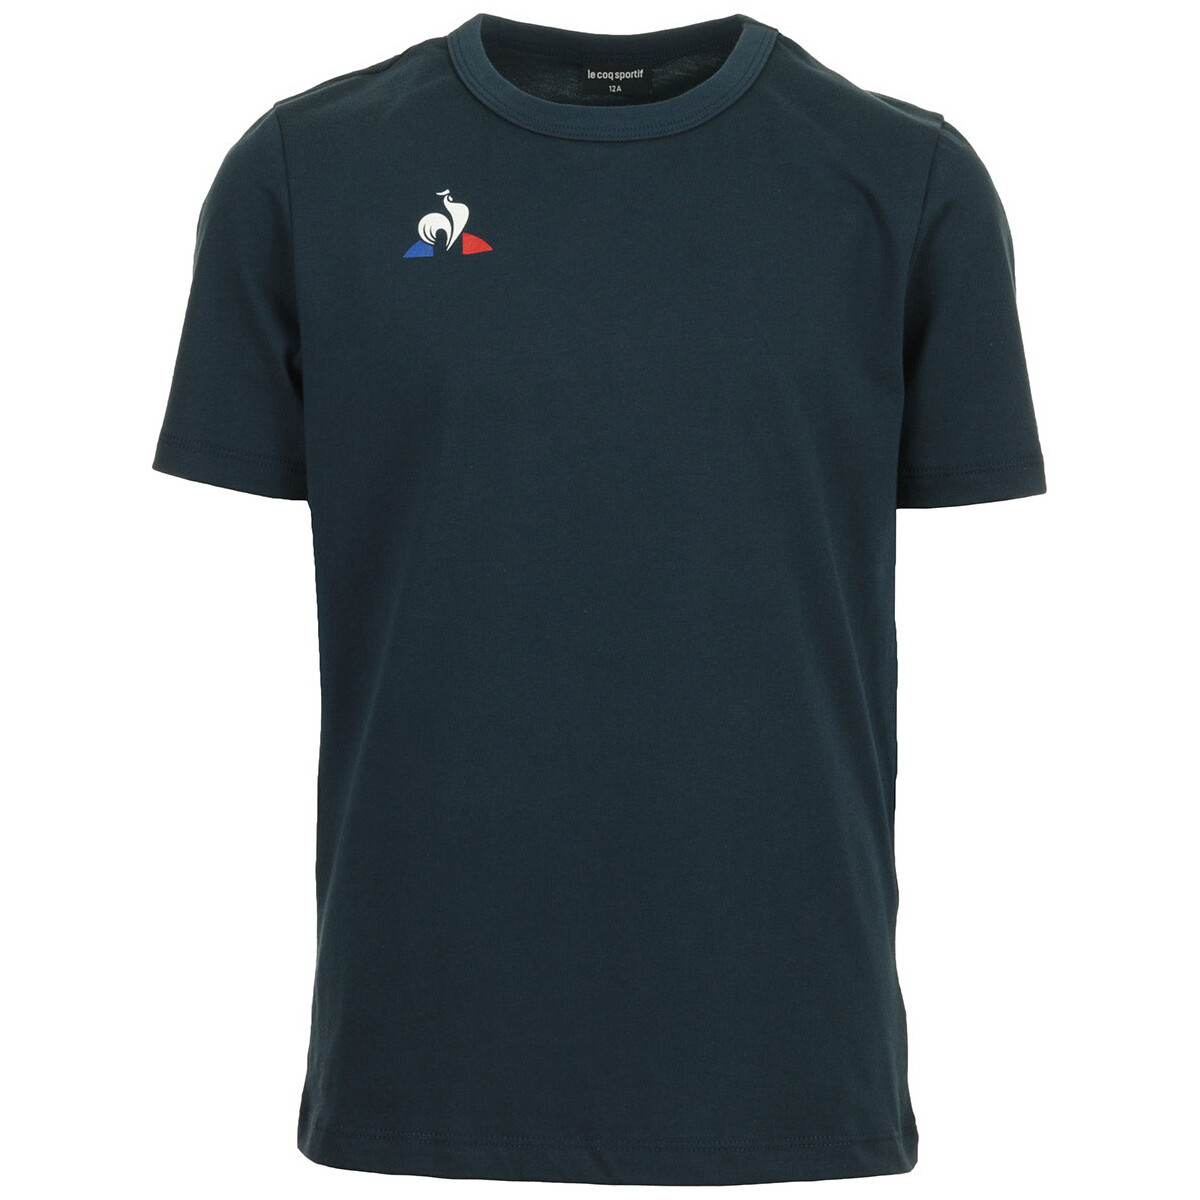 Textiel Jongens T-shirts korte mouwen Le Coq Sportif Tee Ss Presentation Blauw